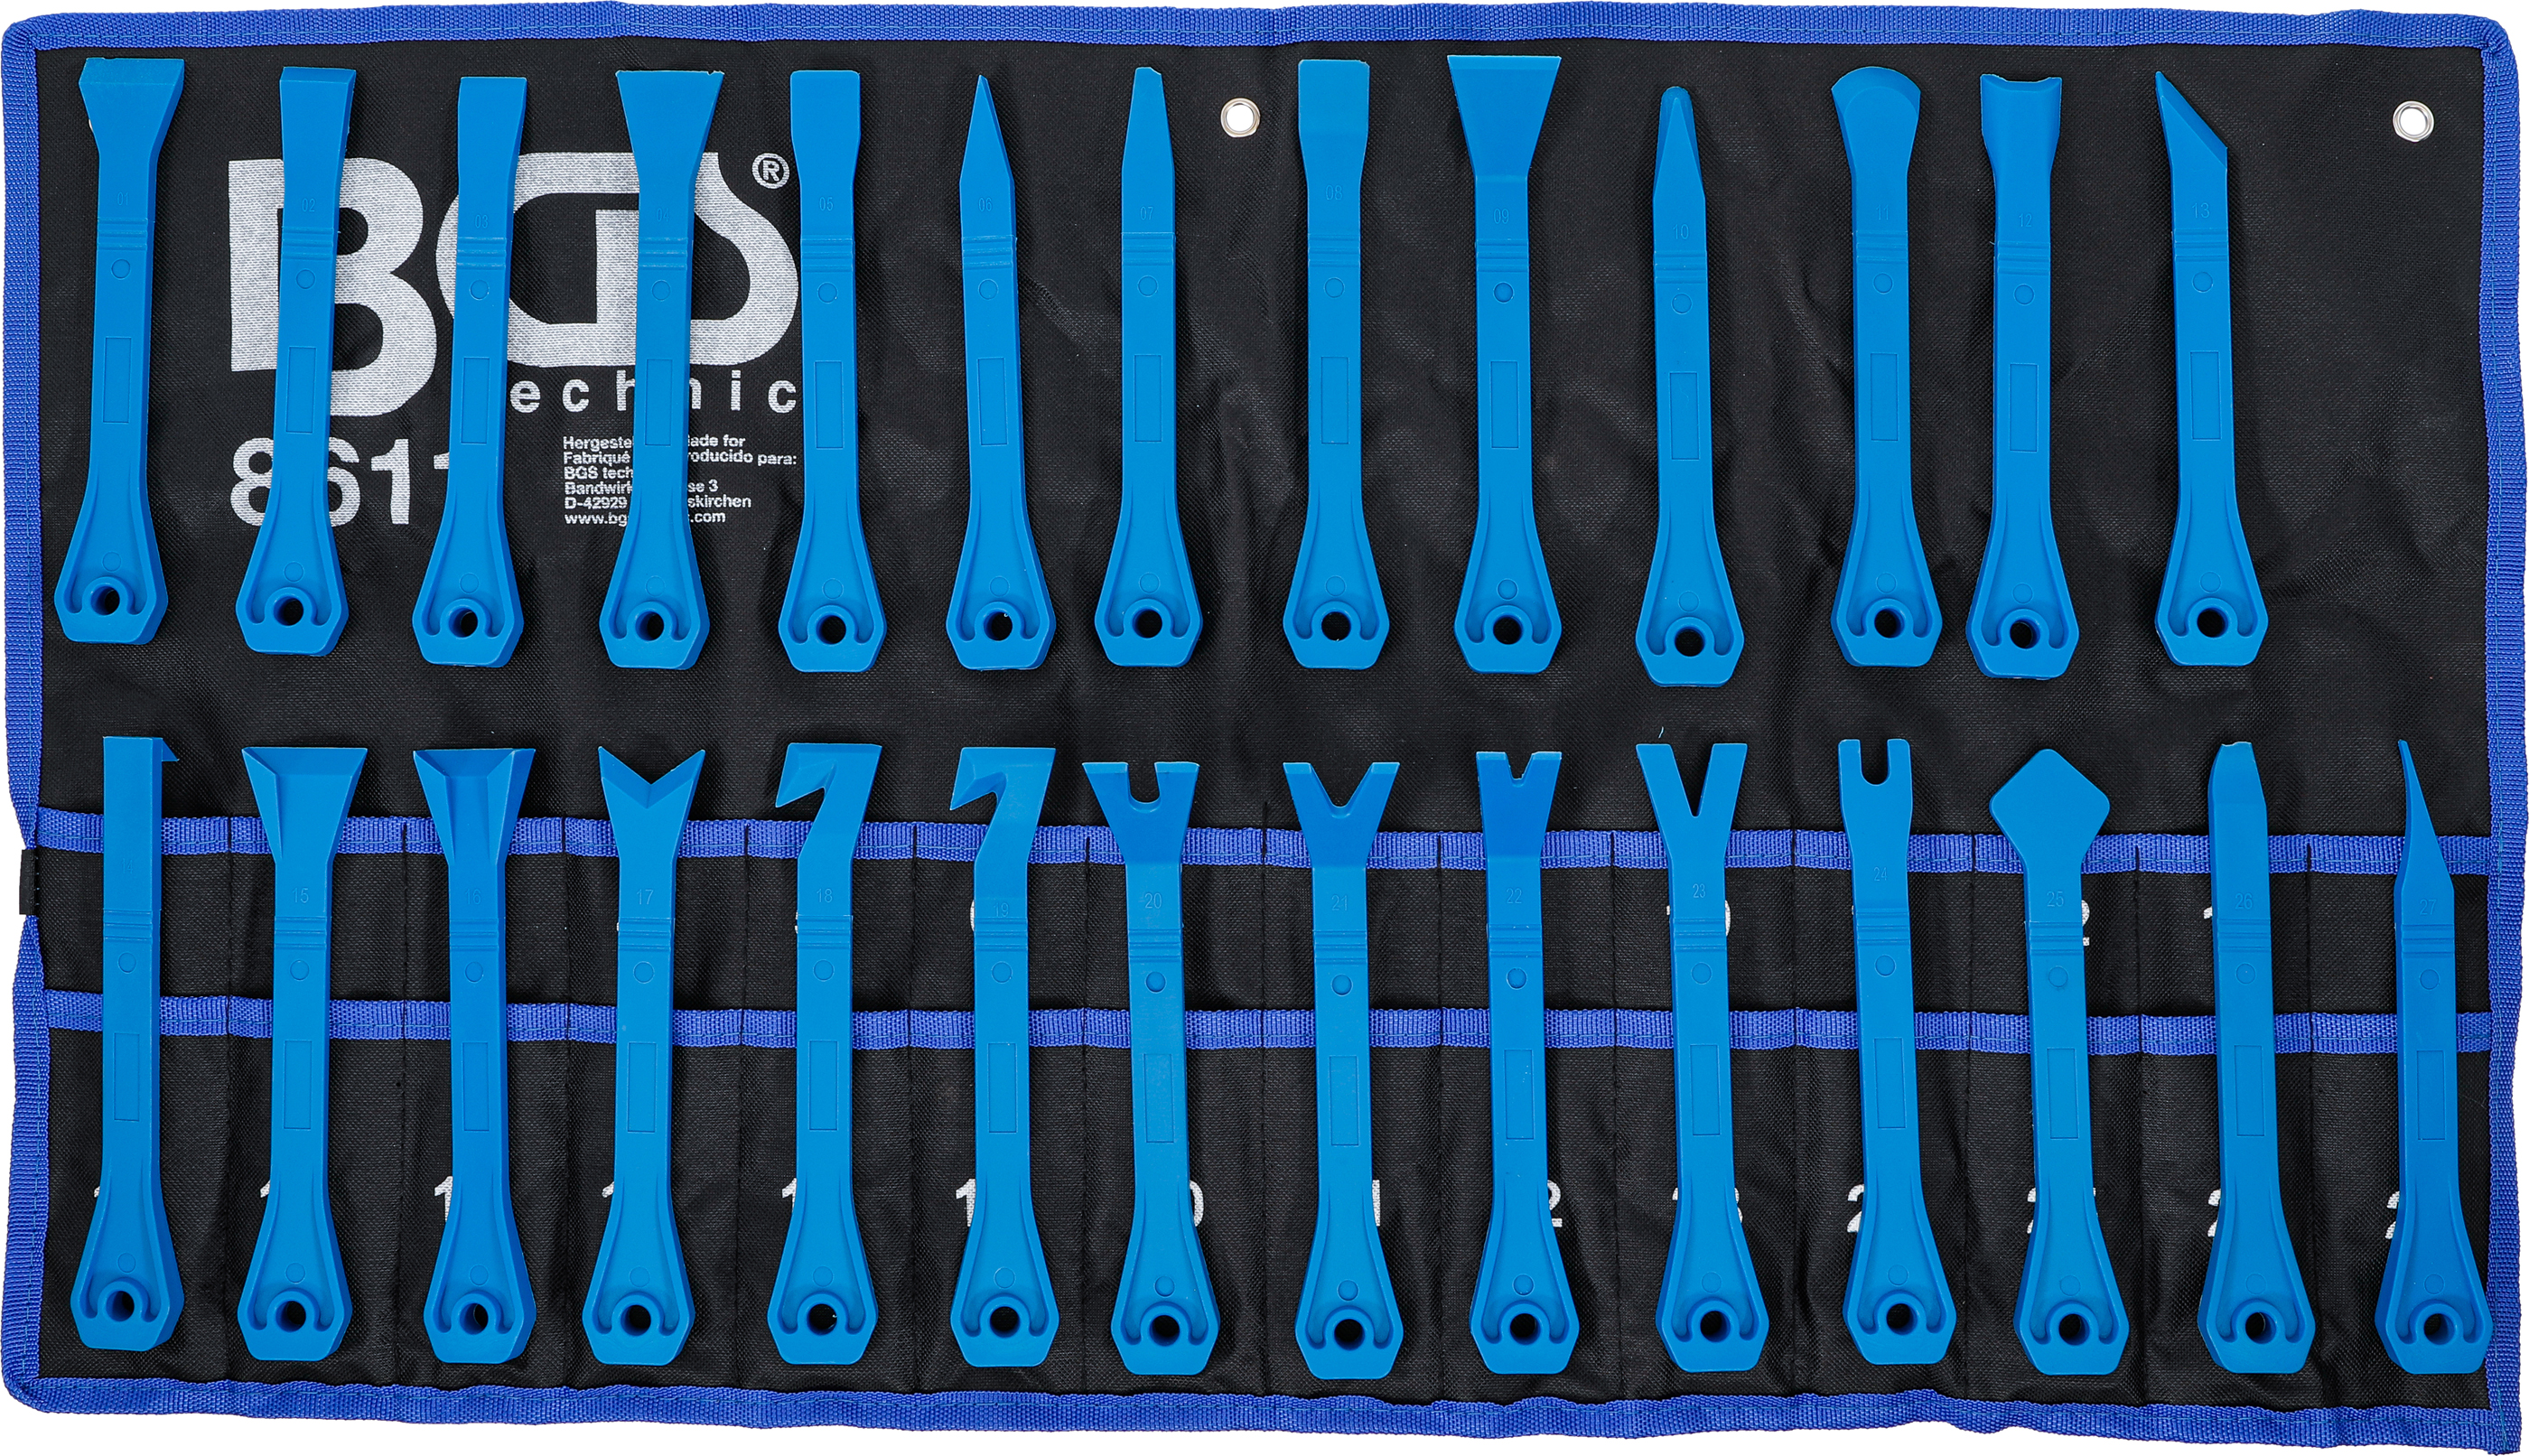 BGS 8611 Set spatule pentru demontat interioare, bumbi, clipsuri, 27 piese